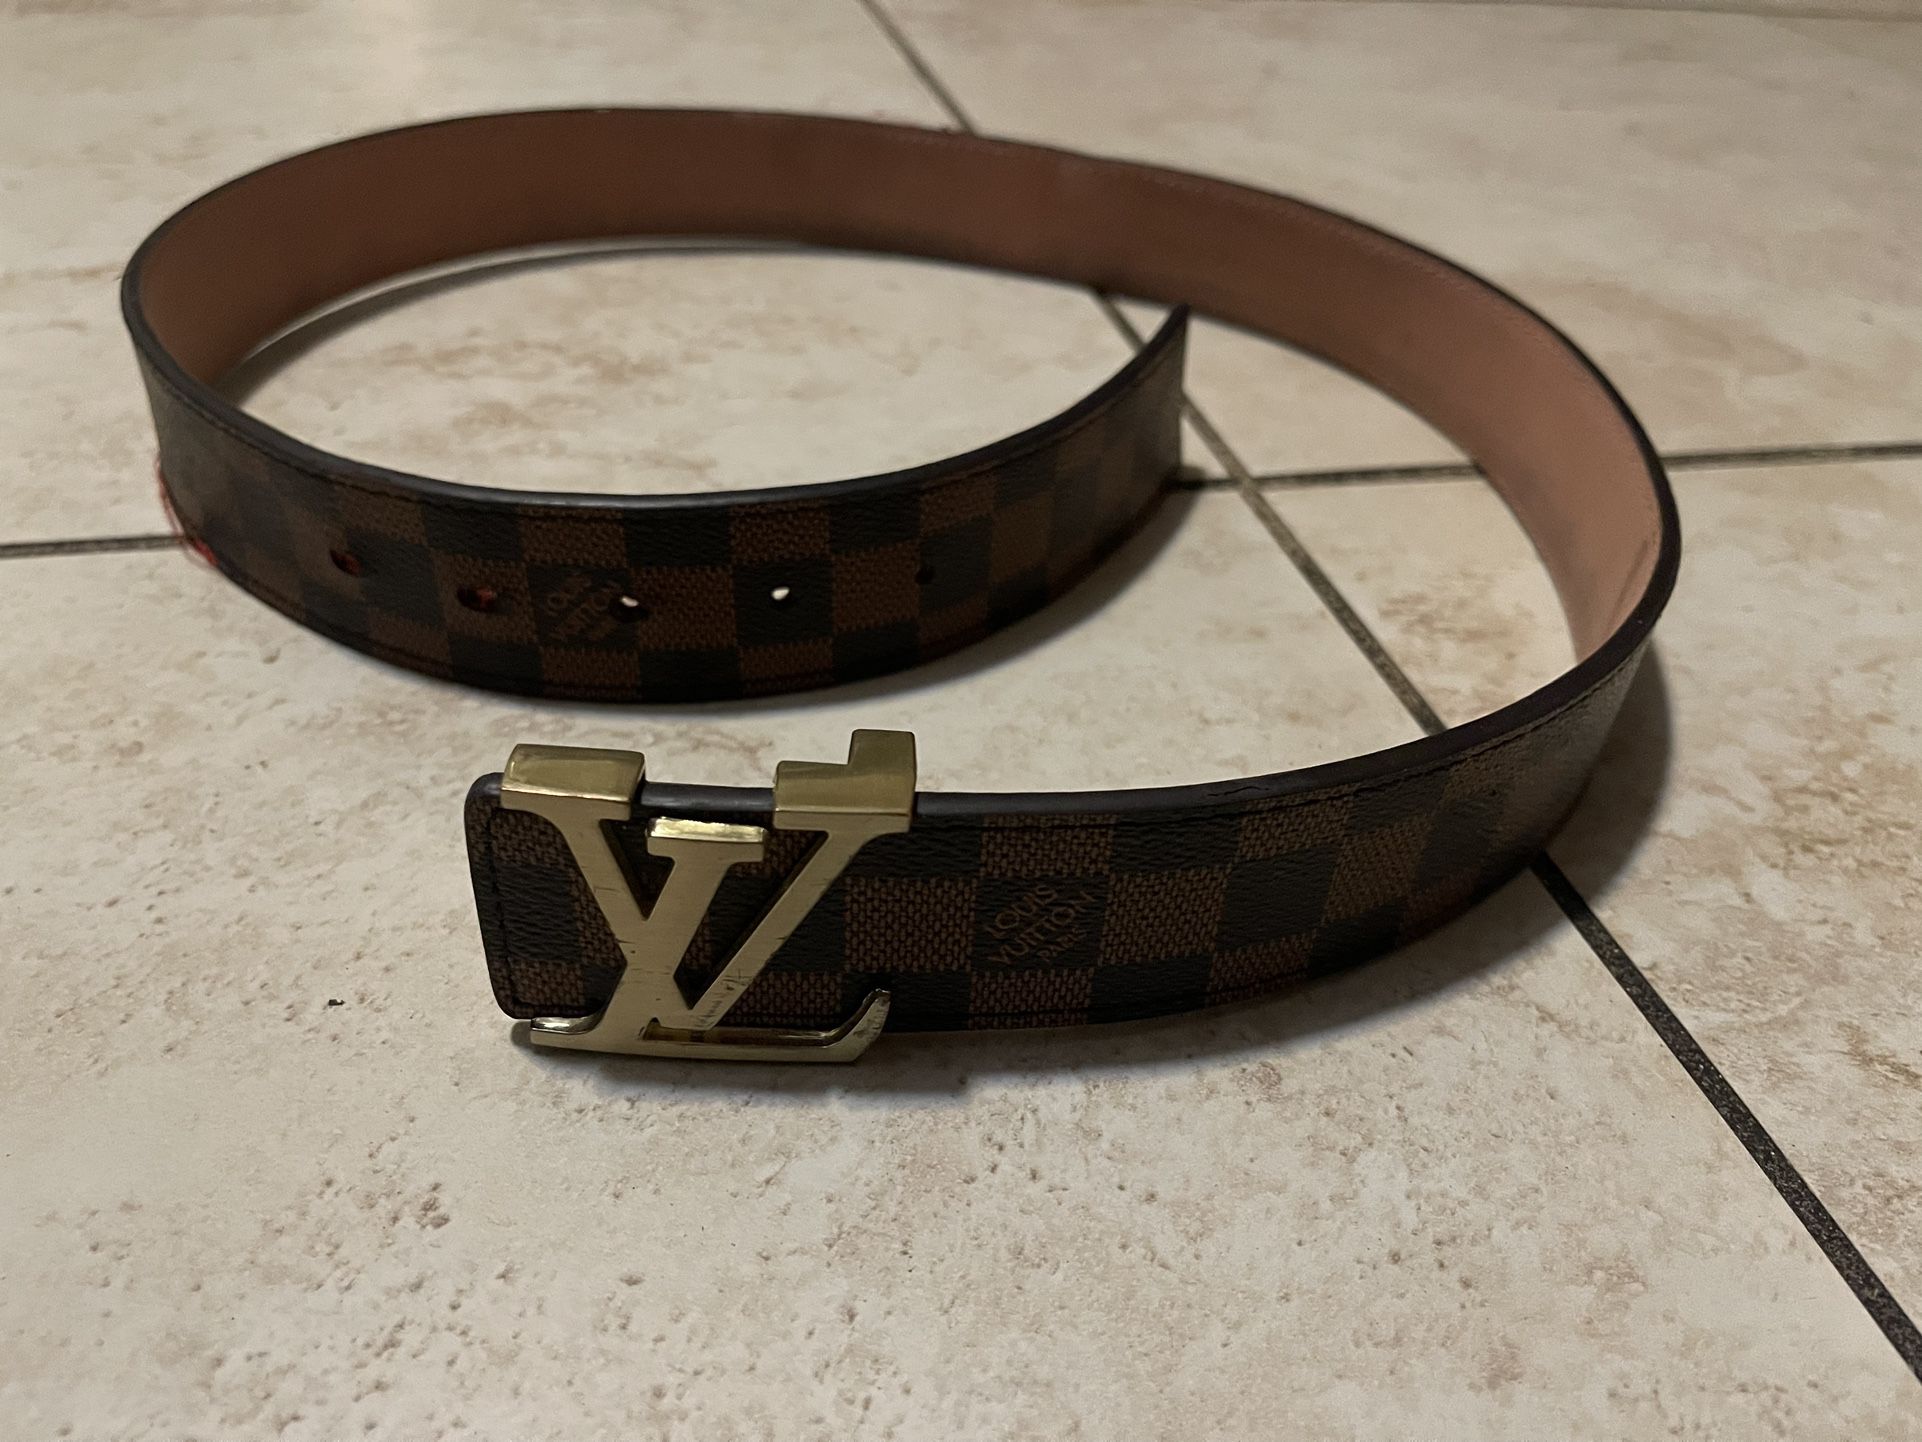 Luis Vuitton Belt for Sale in Miami, FL - OfferUp